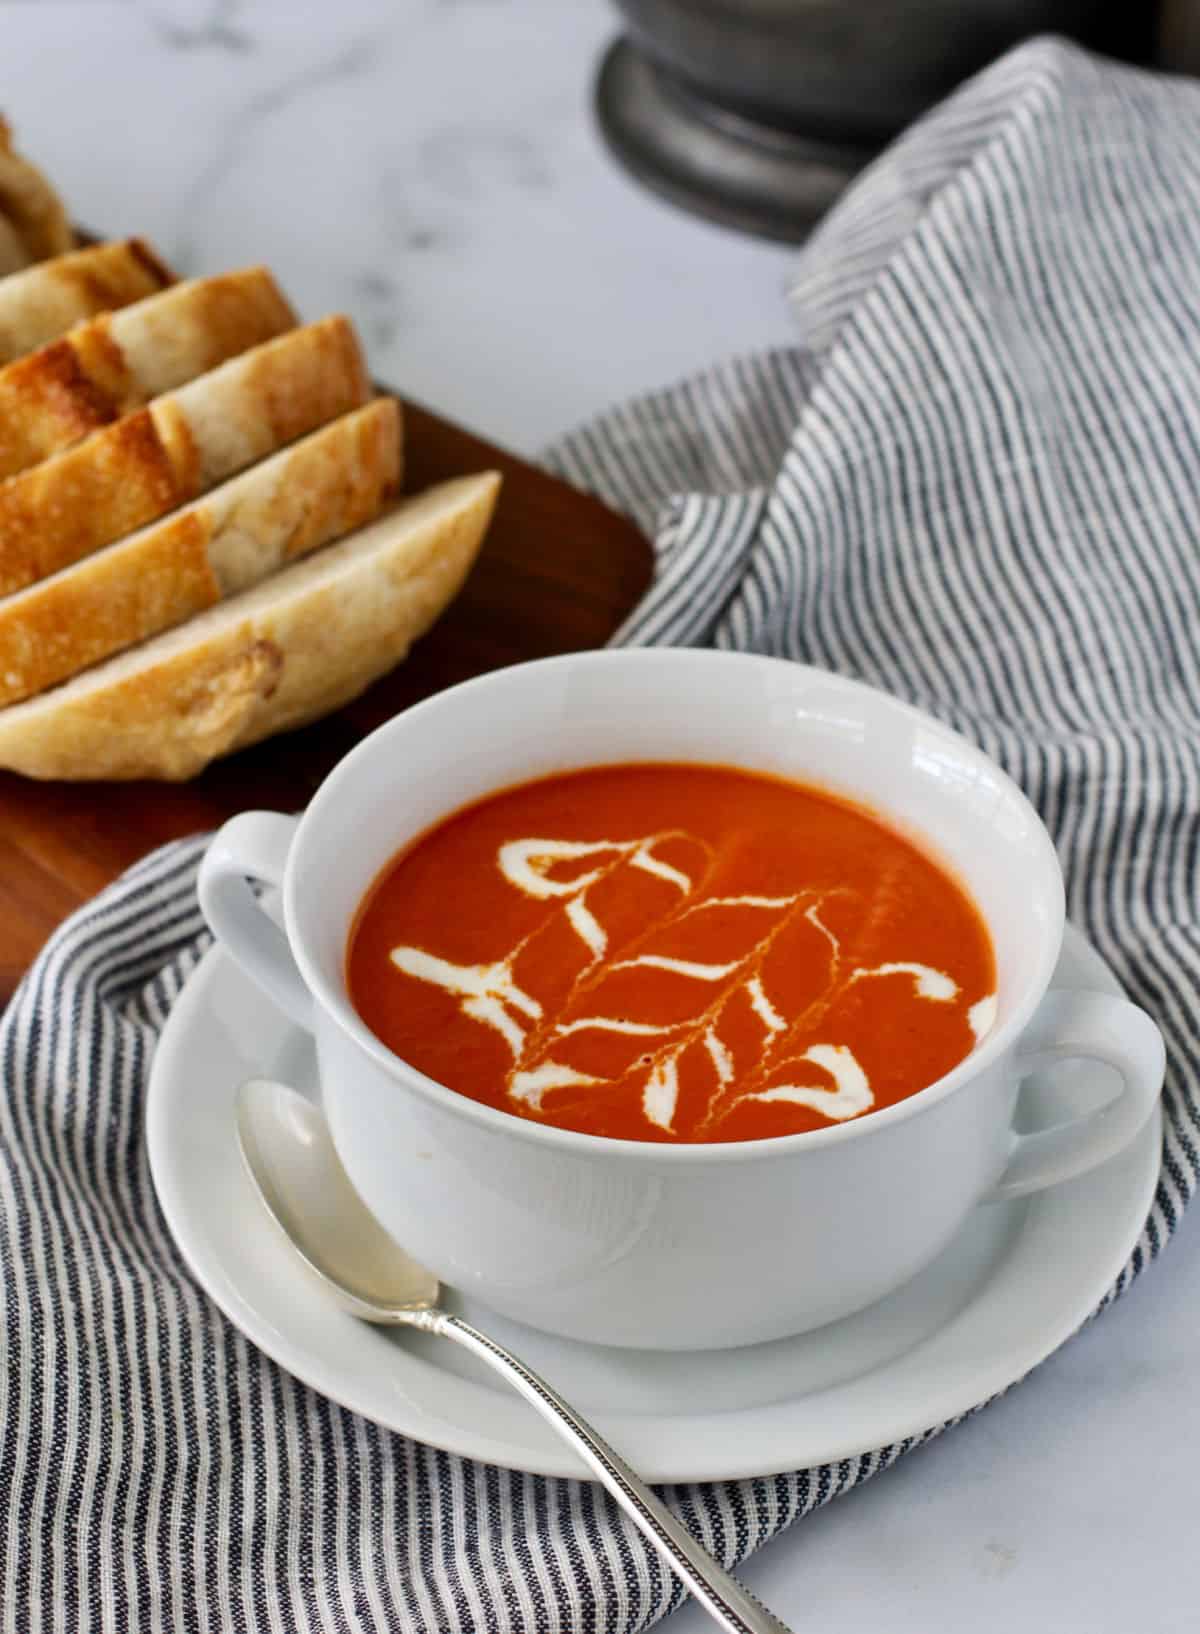 Cream of Tomato Soup in a white bowl.